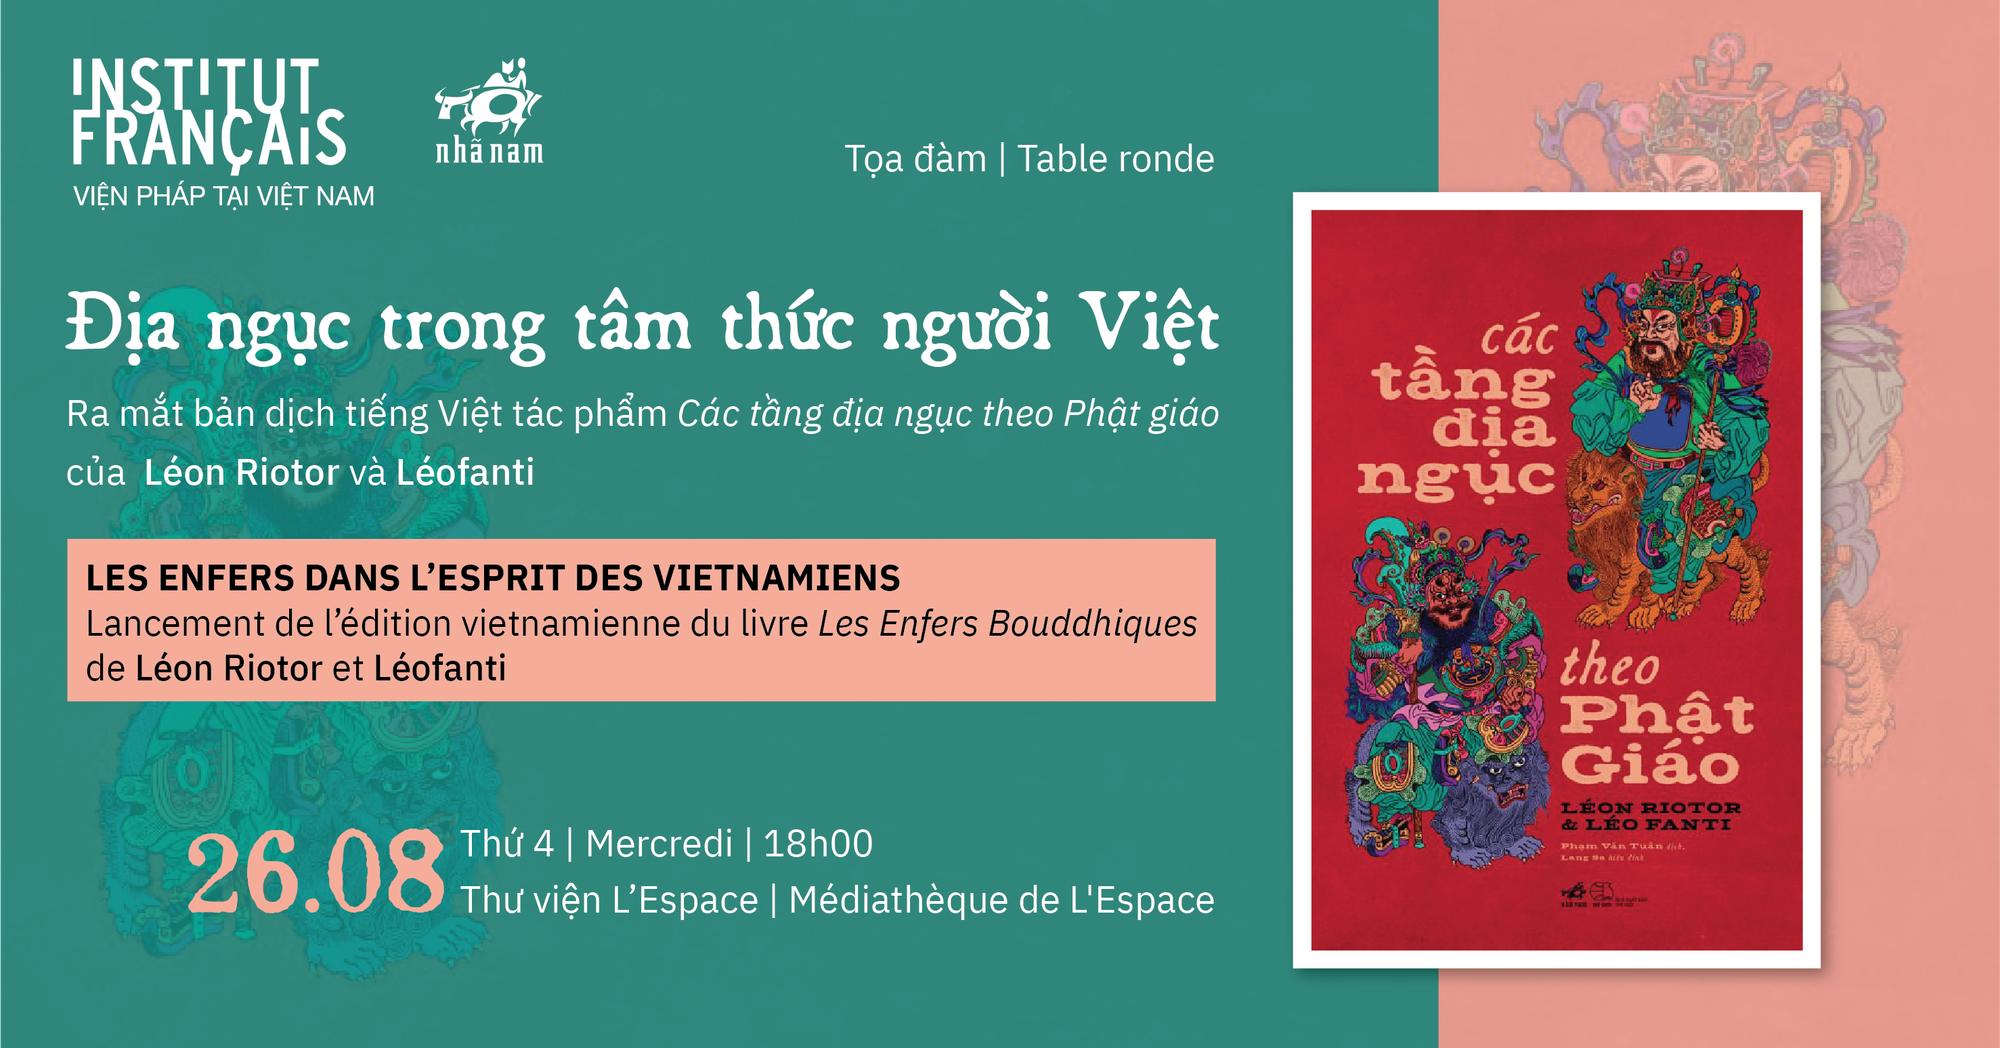 Địa ngục trong tâm thức người Việt qua góc nhìn của hai học giả Pháp  - Ảnh 3.